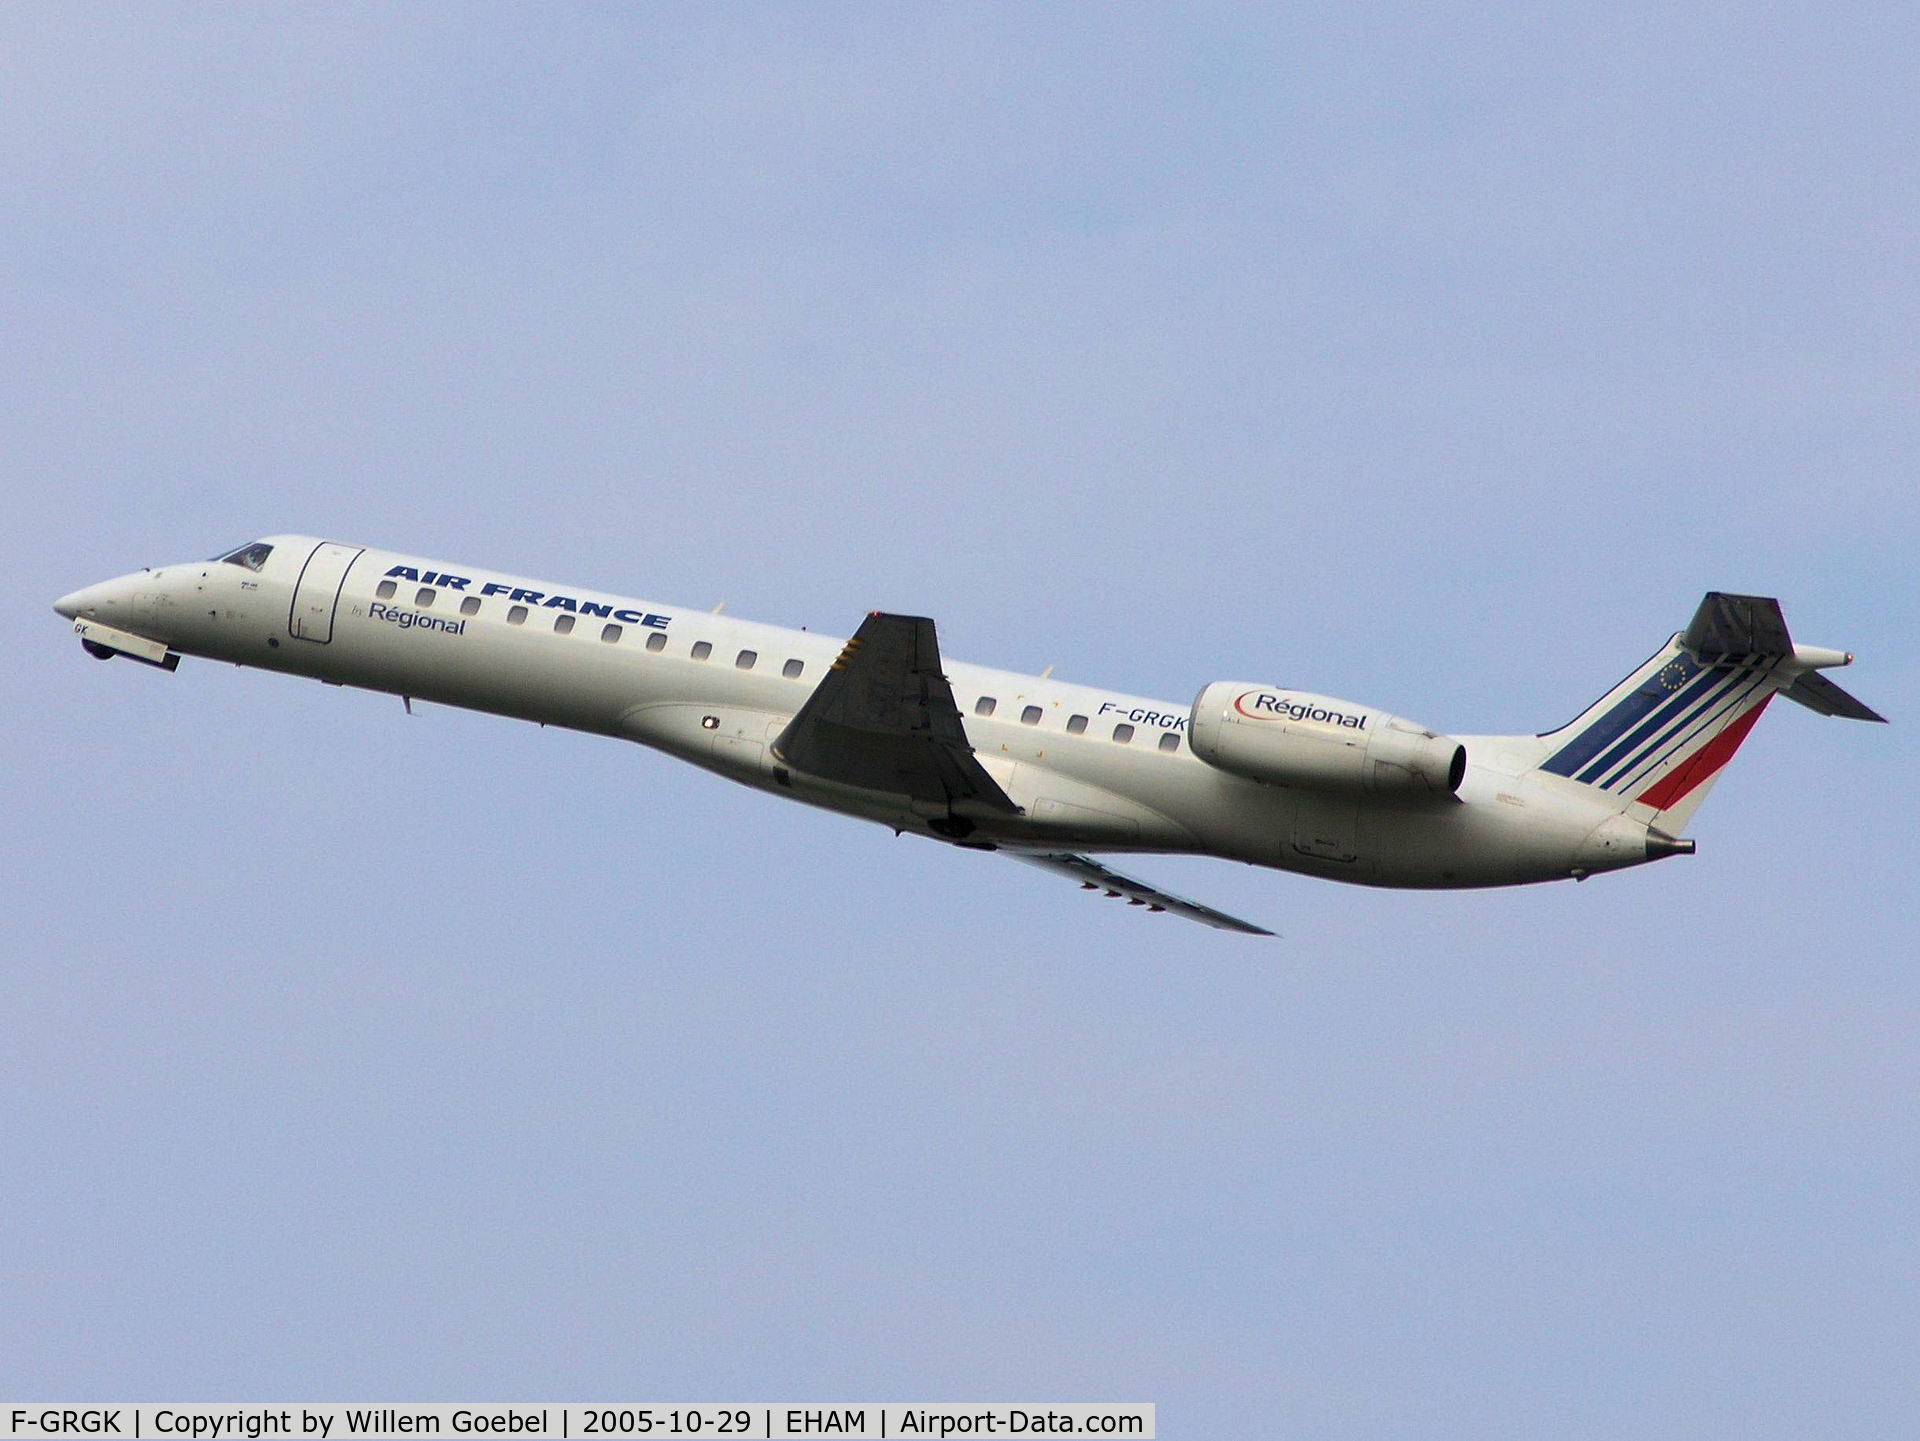 F-GRGK, 2000 Embraer EMB-145EU (ERJ-145EU) C/N 145324, Take off from Amsterdam Airport on runway 24